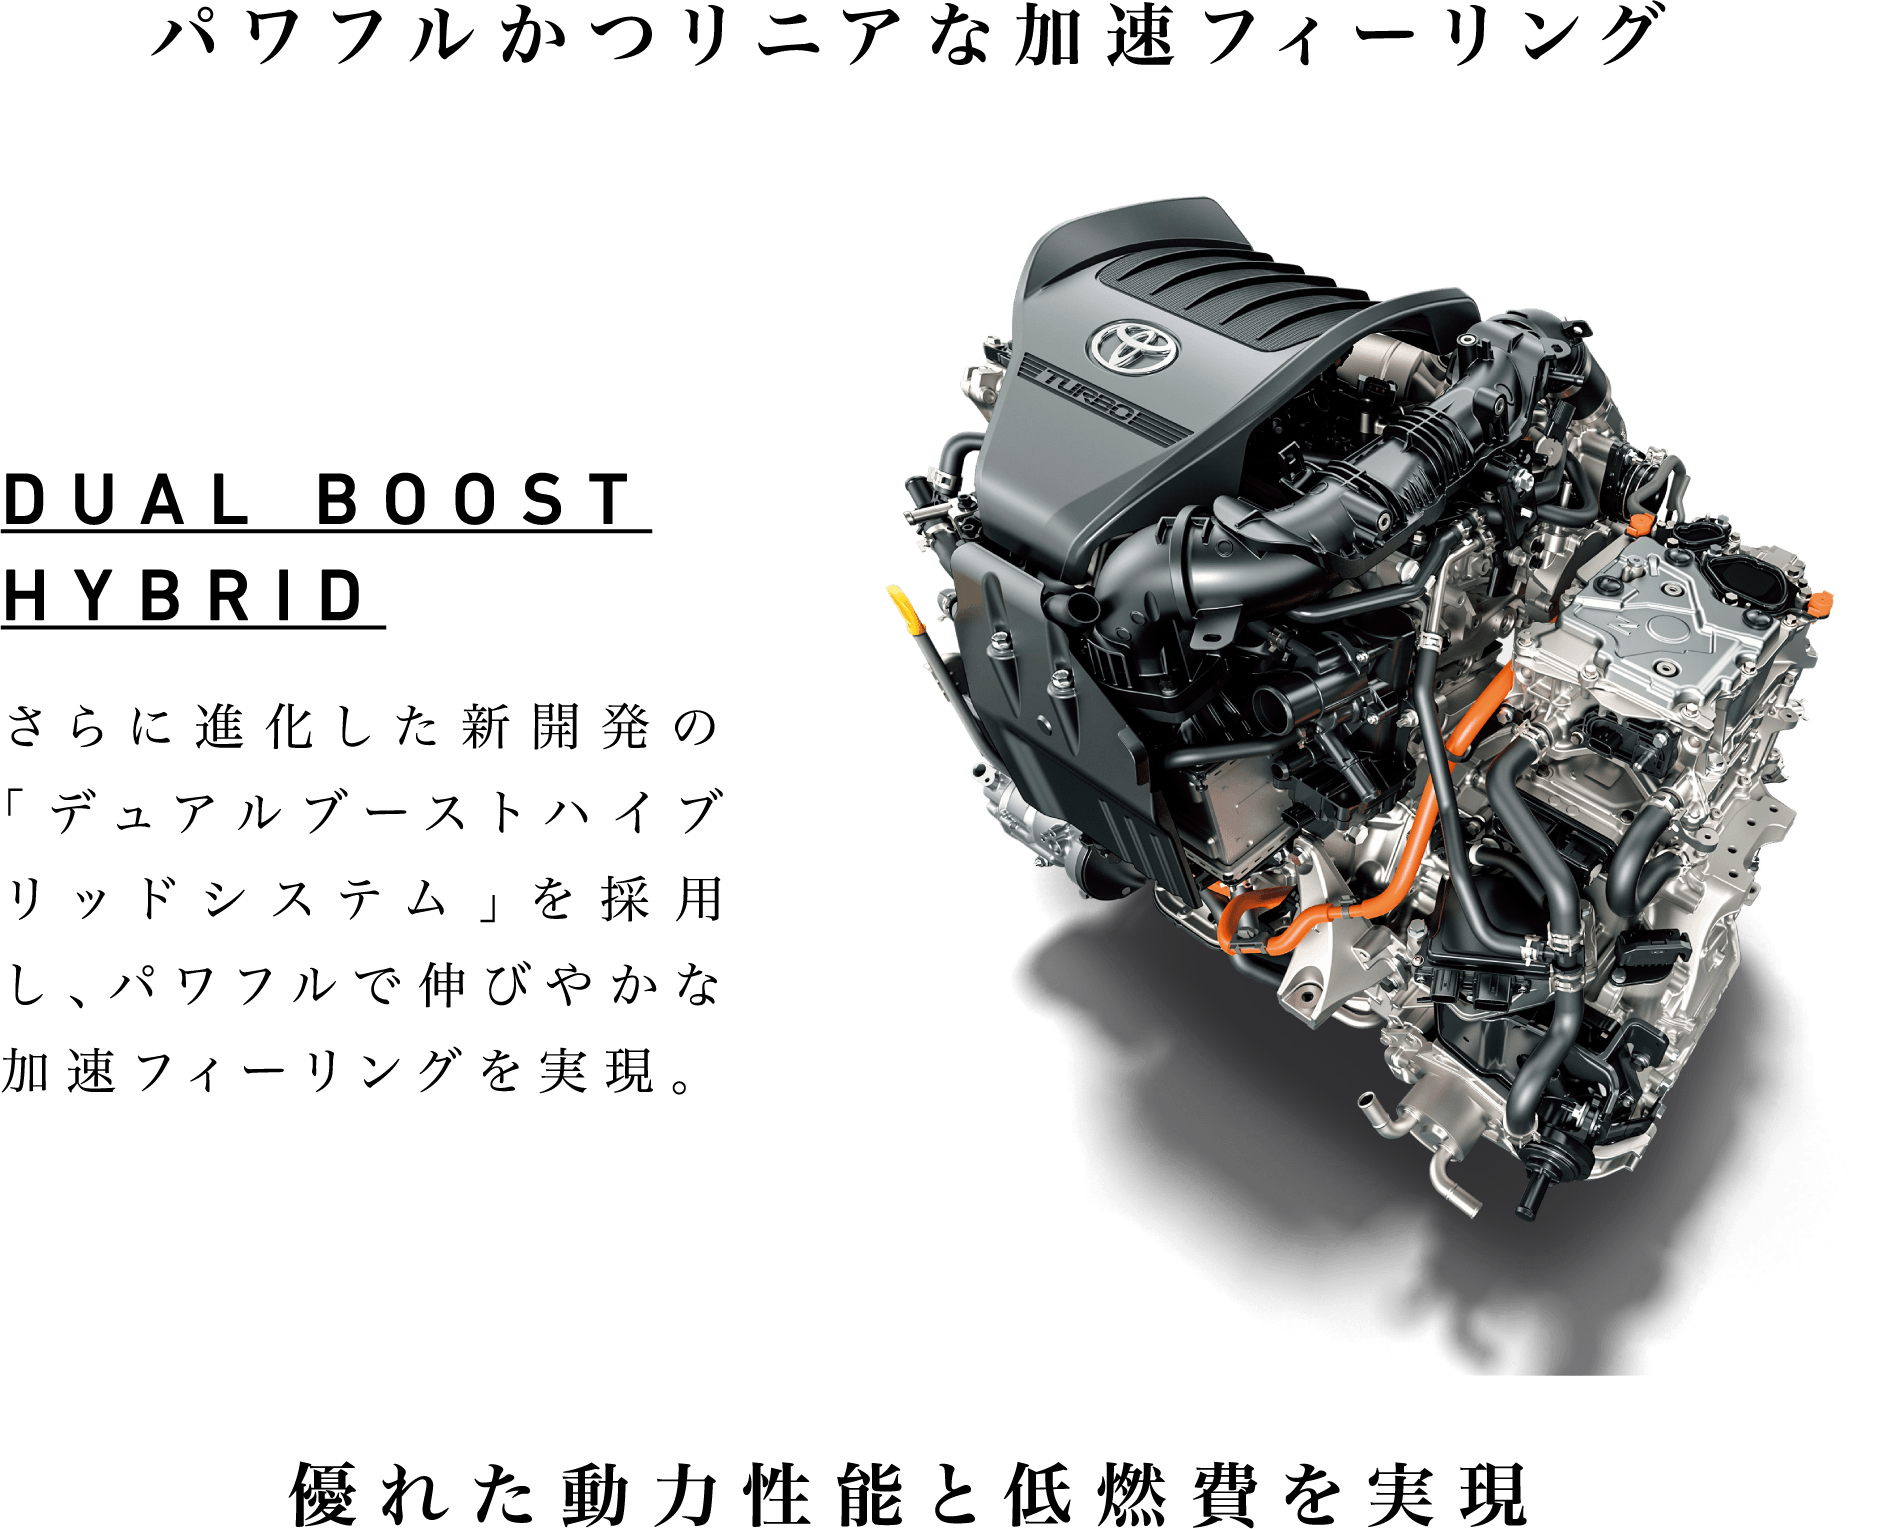 パワフルかつリニアな加速フィーリング DUAL BOOST HYBRID さらに進化した新開発の「デュアルブーストハイブリッドシステム」を採用し、パワフルで伸びやかな加速フィーリングを実現。優れた動力性能と低燃費を実現